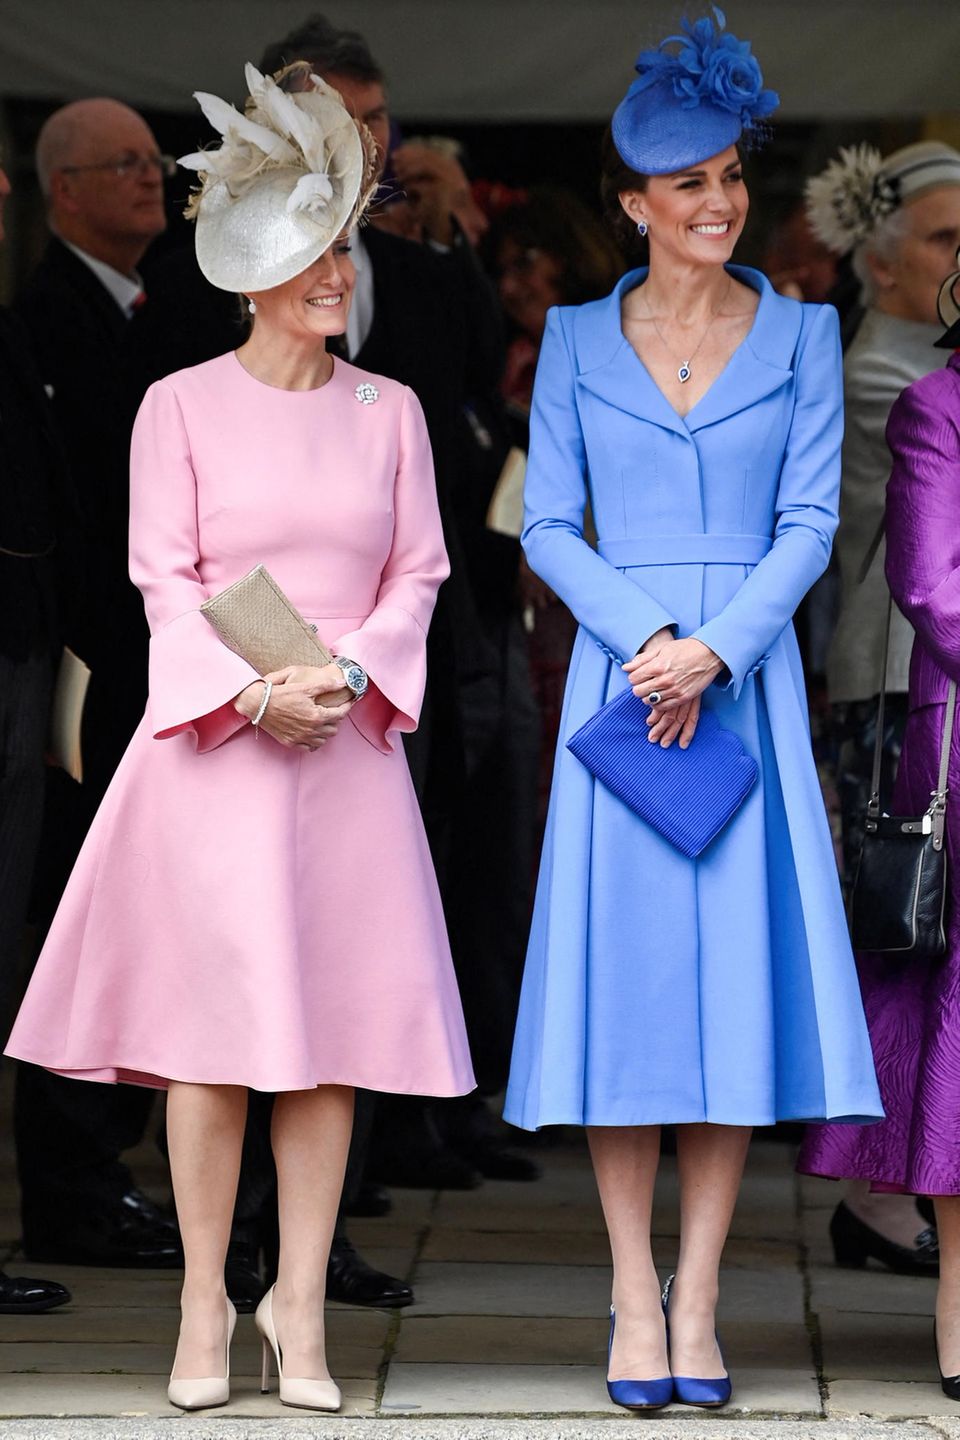 Gemeinsam mit Gräfin Sophie von Wessex besucht Herzogin Catherine den Order of the Garter-Gottesdienst in Windsor. Gut gelaunt strahlen die beiden um die Wette. Doch nicht nur zwischenmenschlich scheint es bei den beiden zu harmonieren. Auch optisch ergänzen sich Sophie in ihrem rosafarbenen Kleid mit passendem Fascinator und Kate im hellblauen Mantelkleid und ebenfalls blauem Fascinator perfekt. Ein schöner Farbkontrast zwischen den beiden Frauen.